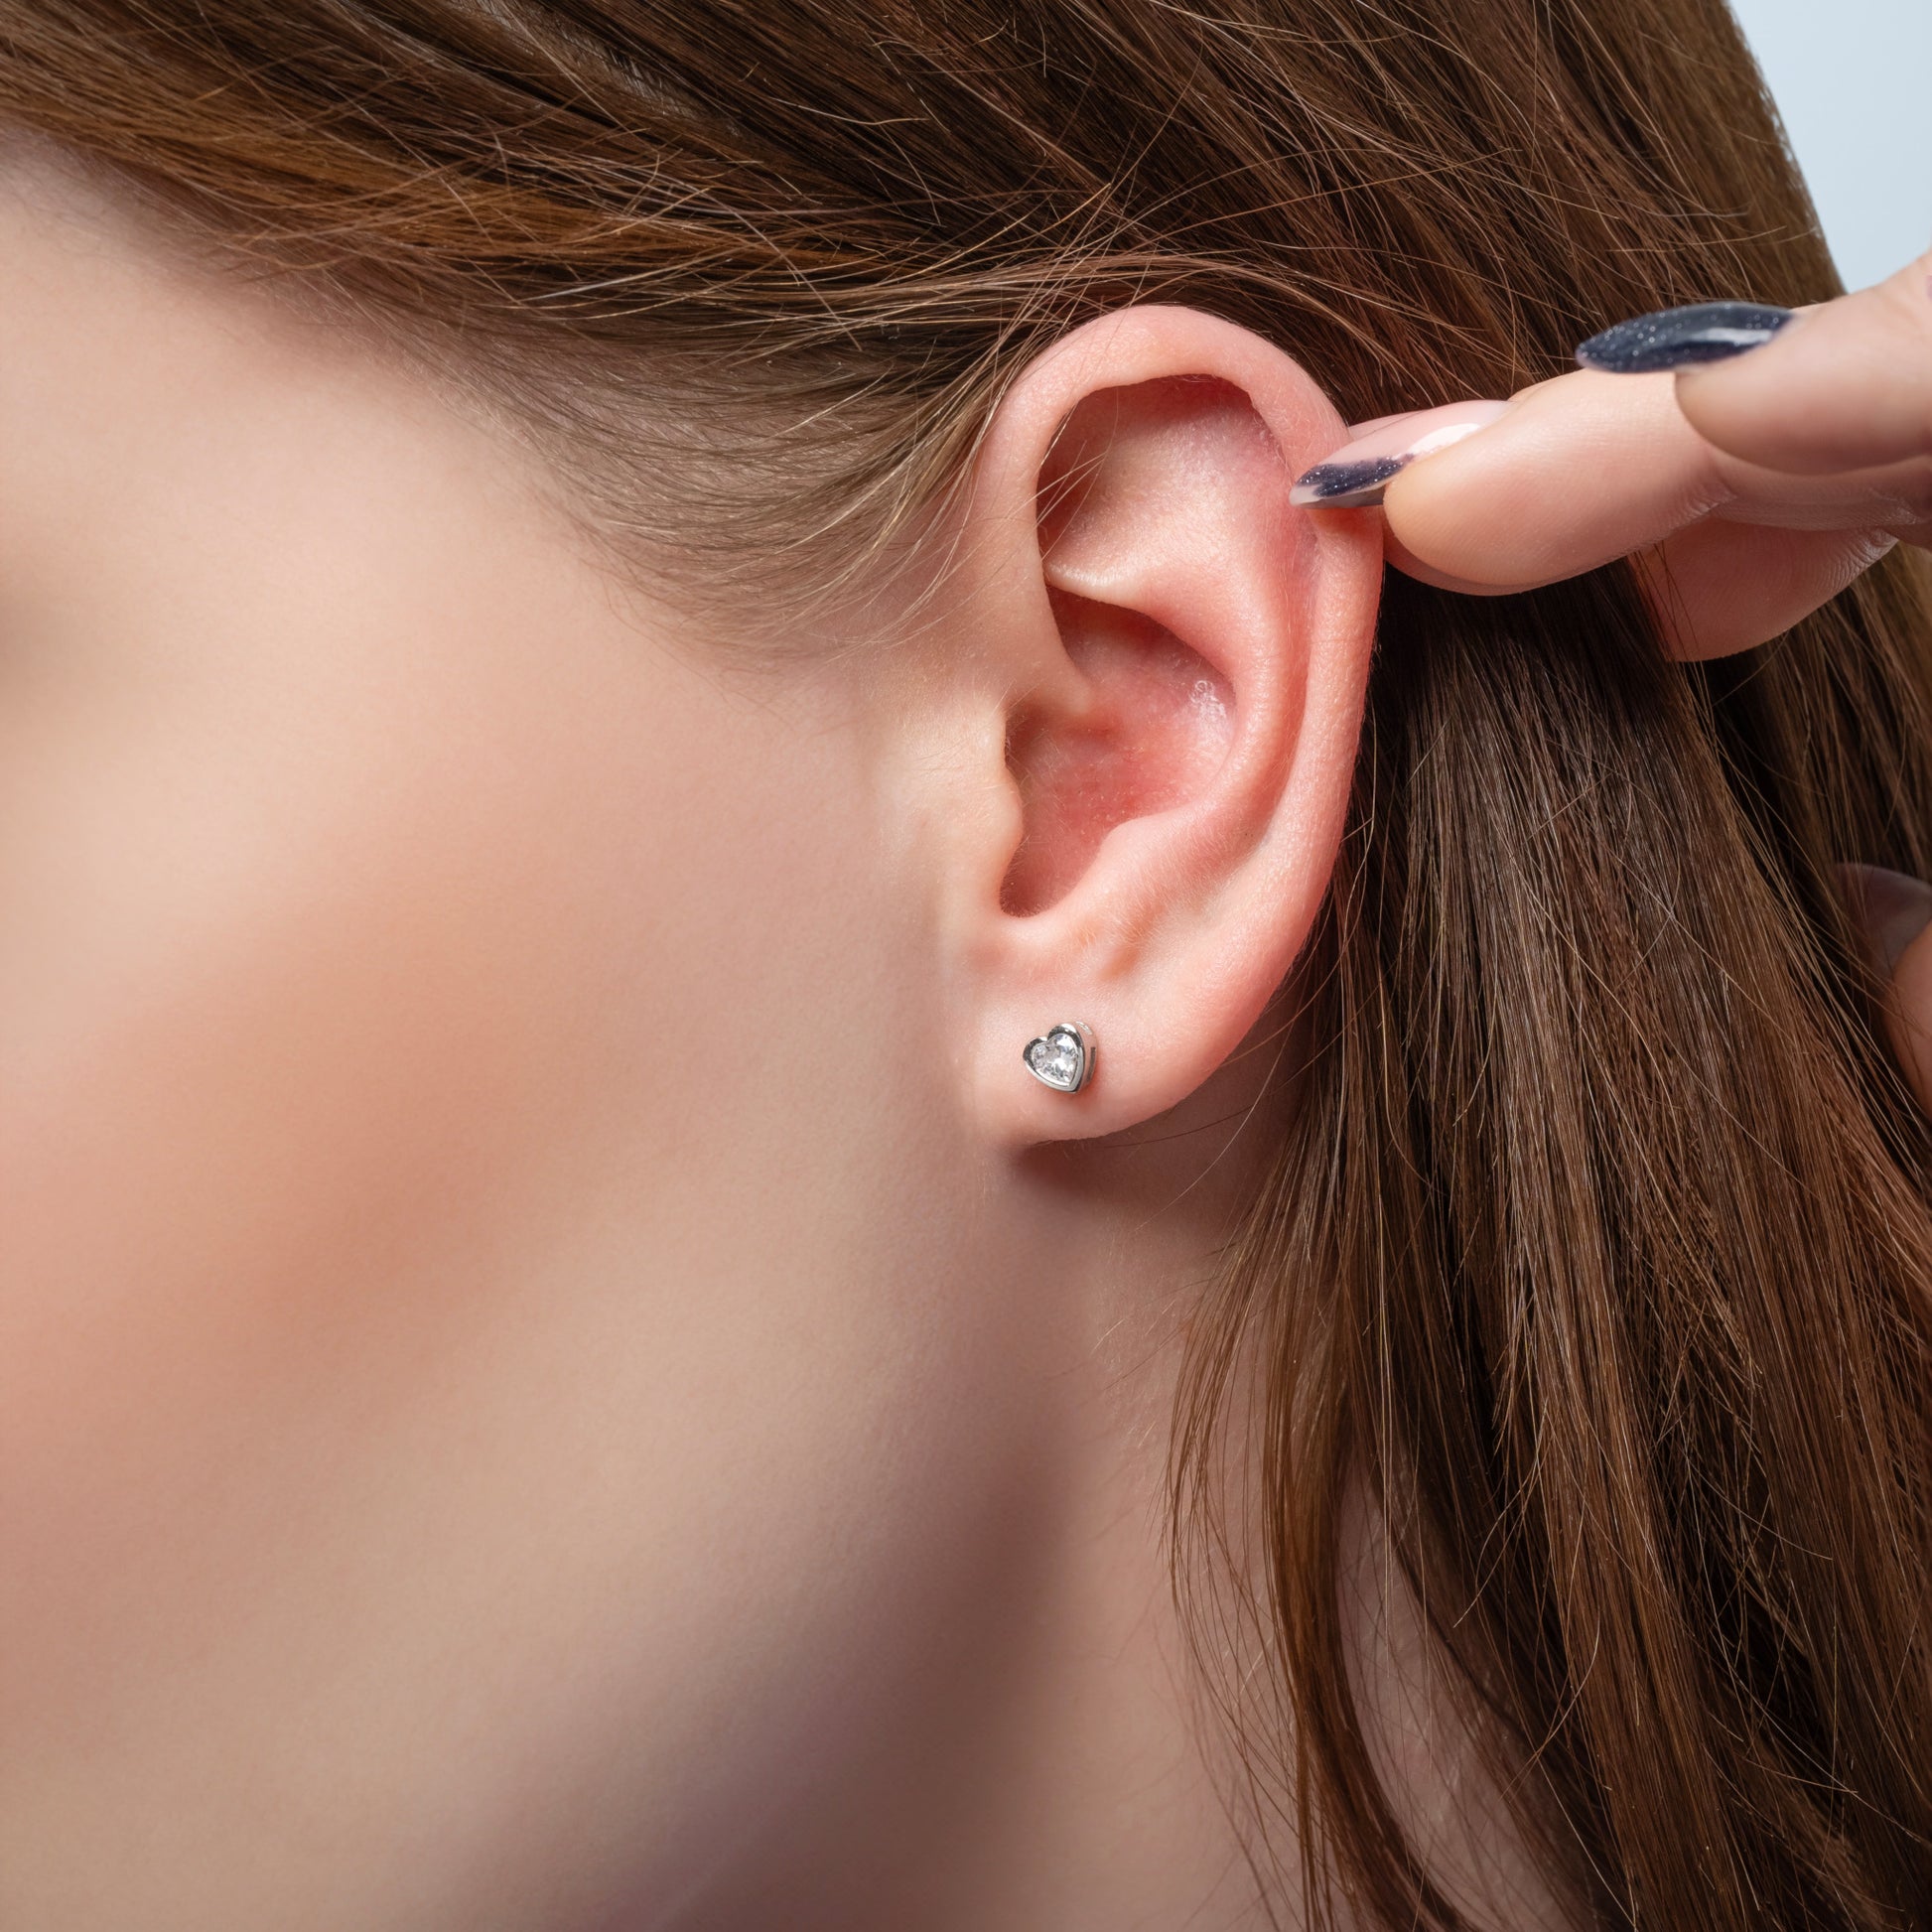 A model showing Heart Shape earring in her ear